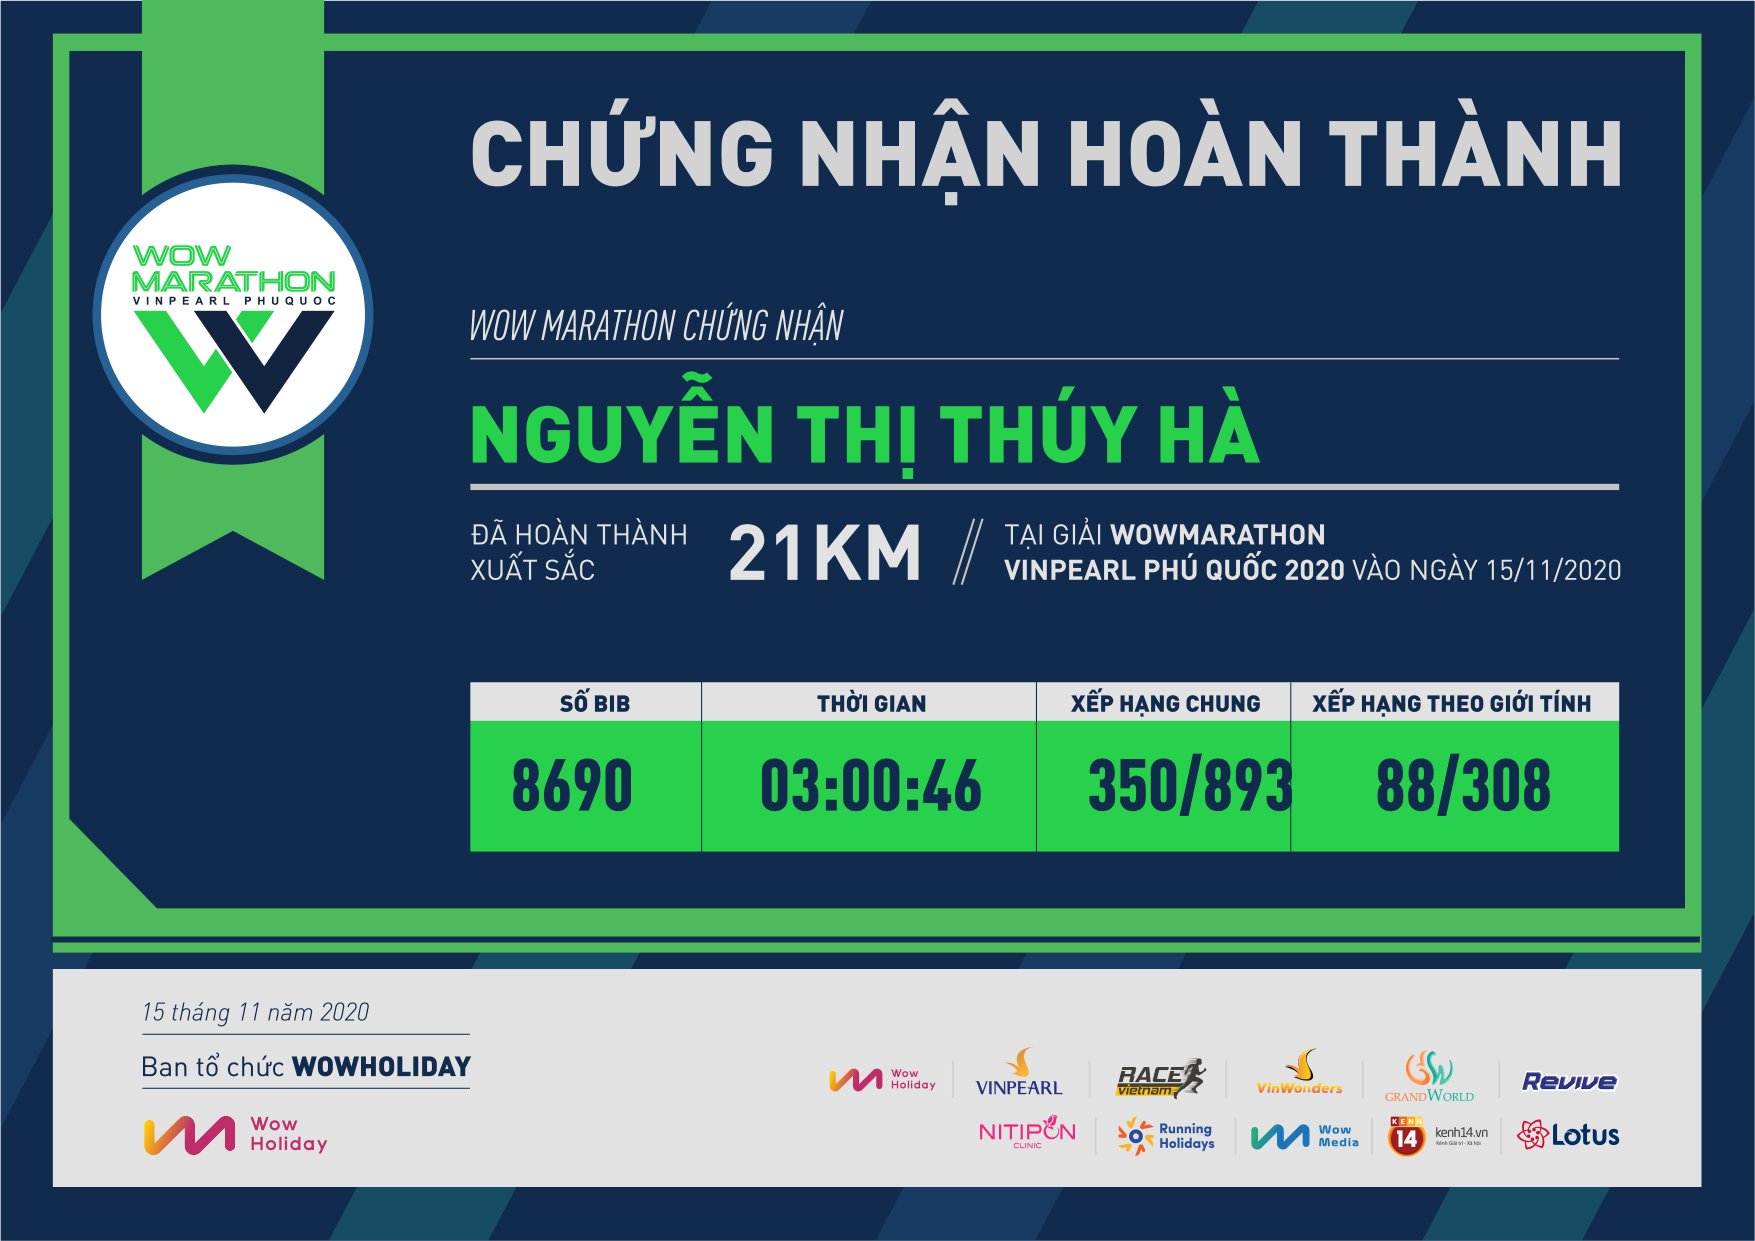 8690 - Nguyễn Thị Thúy Hà